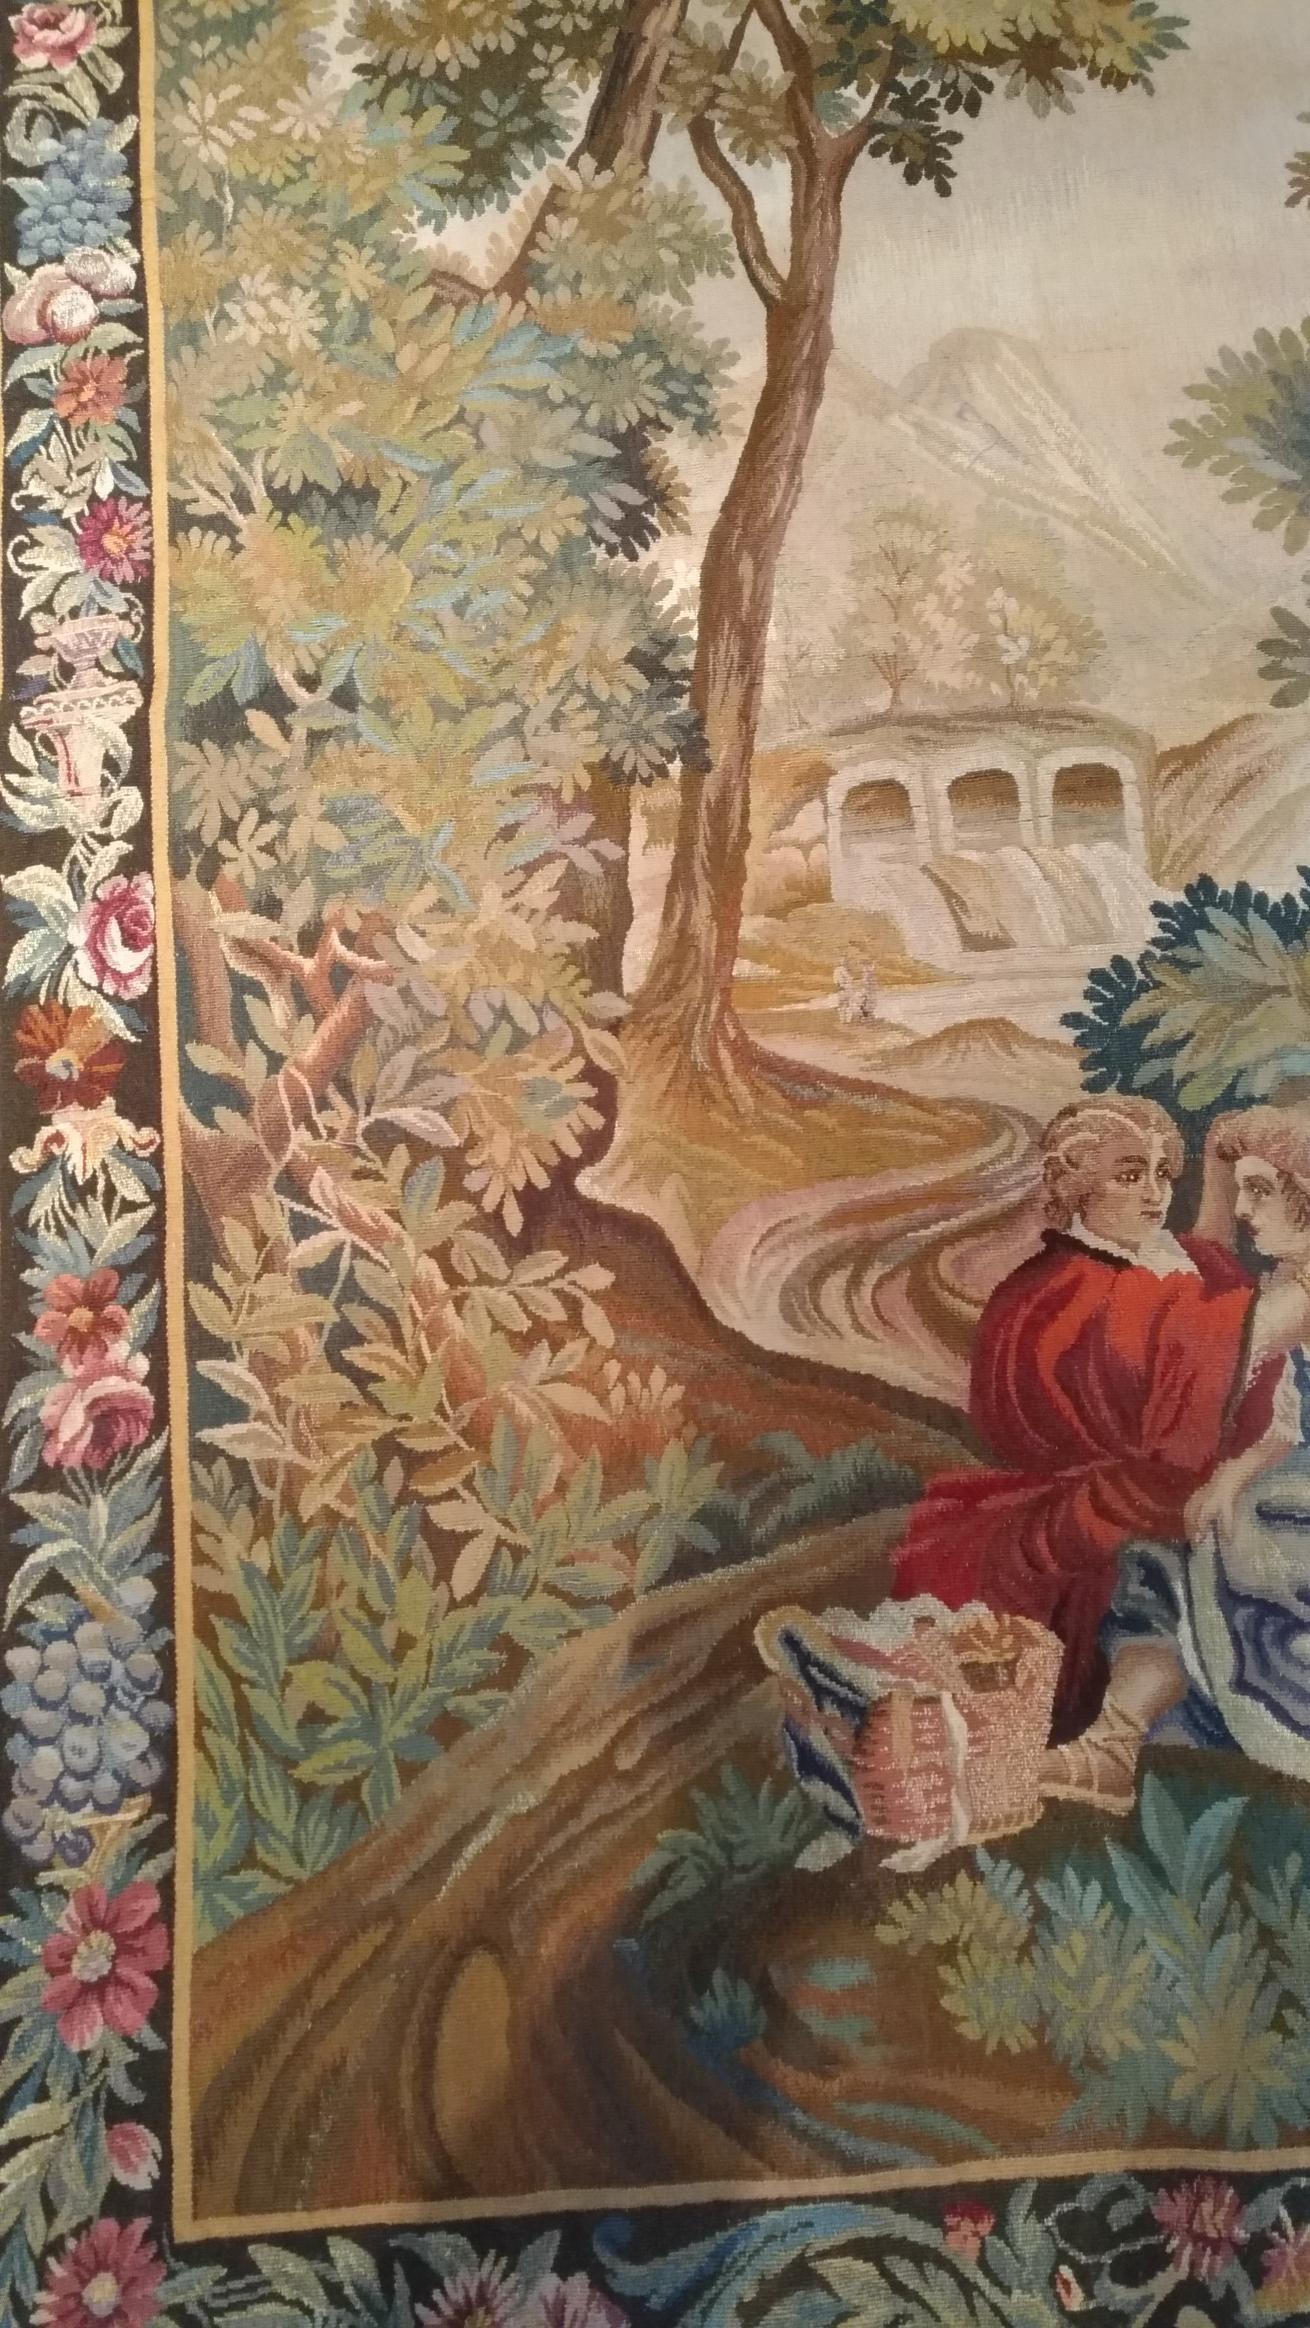 1008 - luxuriöser Aubusson-Wandteppich aus dem 20. Jahrhundert mit einem schönen romantischen Design, das das Äußere des Dorfes mit Charakteren und schönen Farben darstellt, extrem fein handgewebt mit Seide.